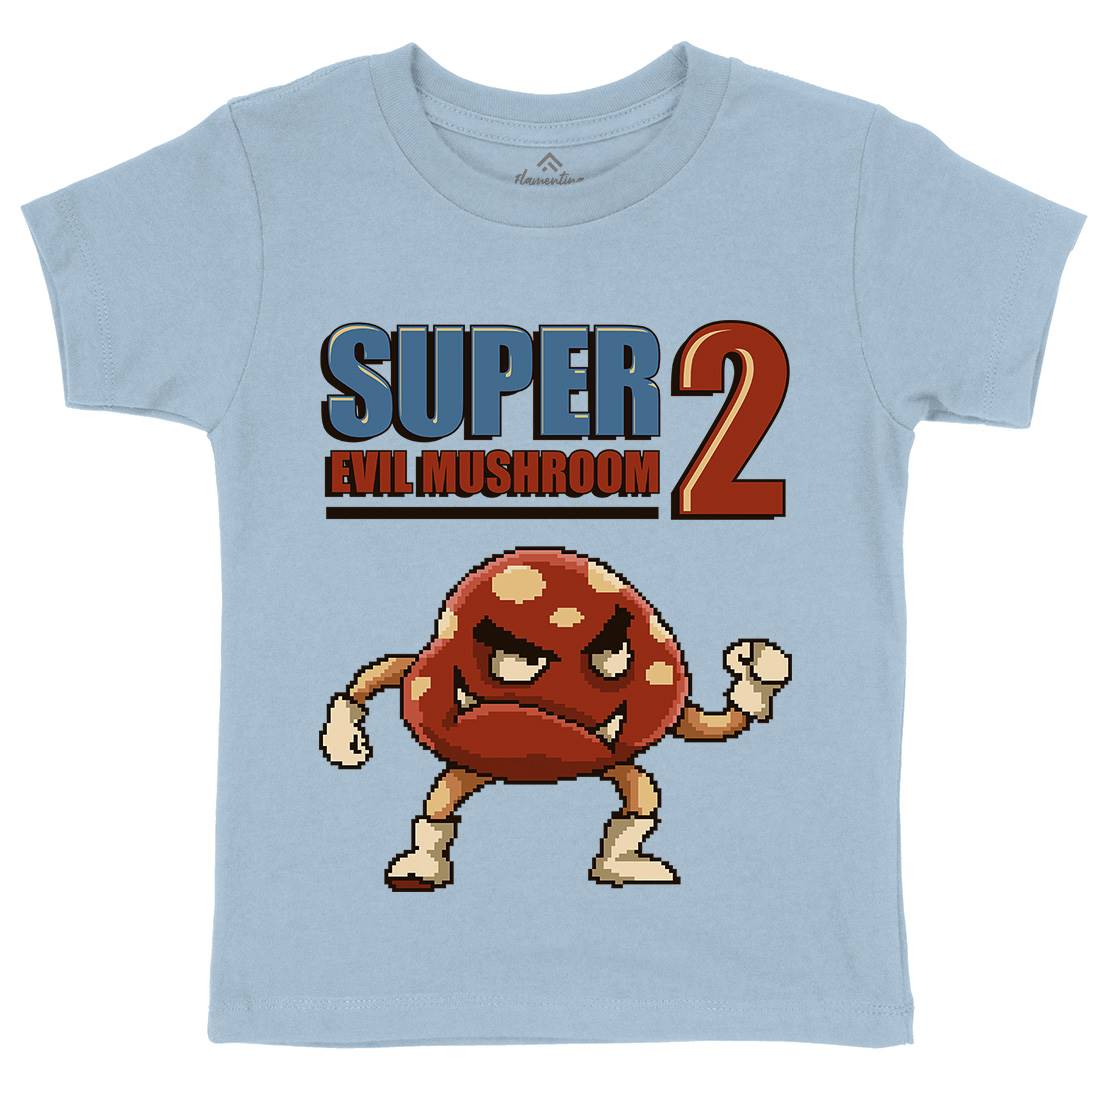 Super Evil Mushroom Kids Crew Neck T-Shirt Geek B962